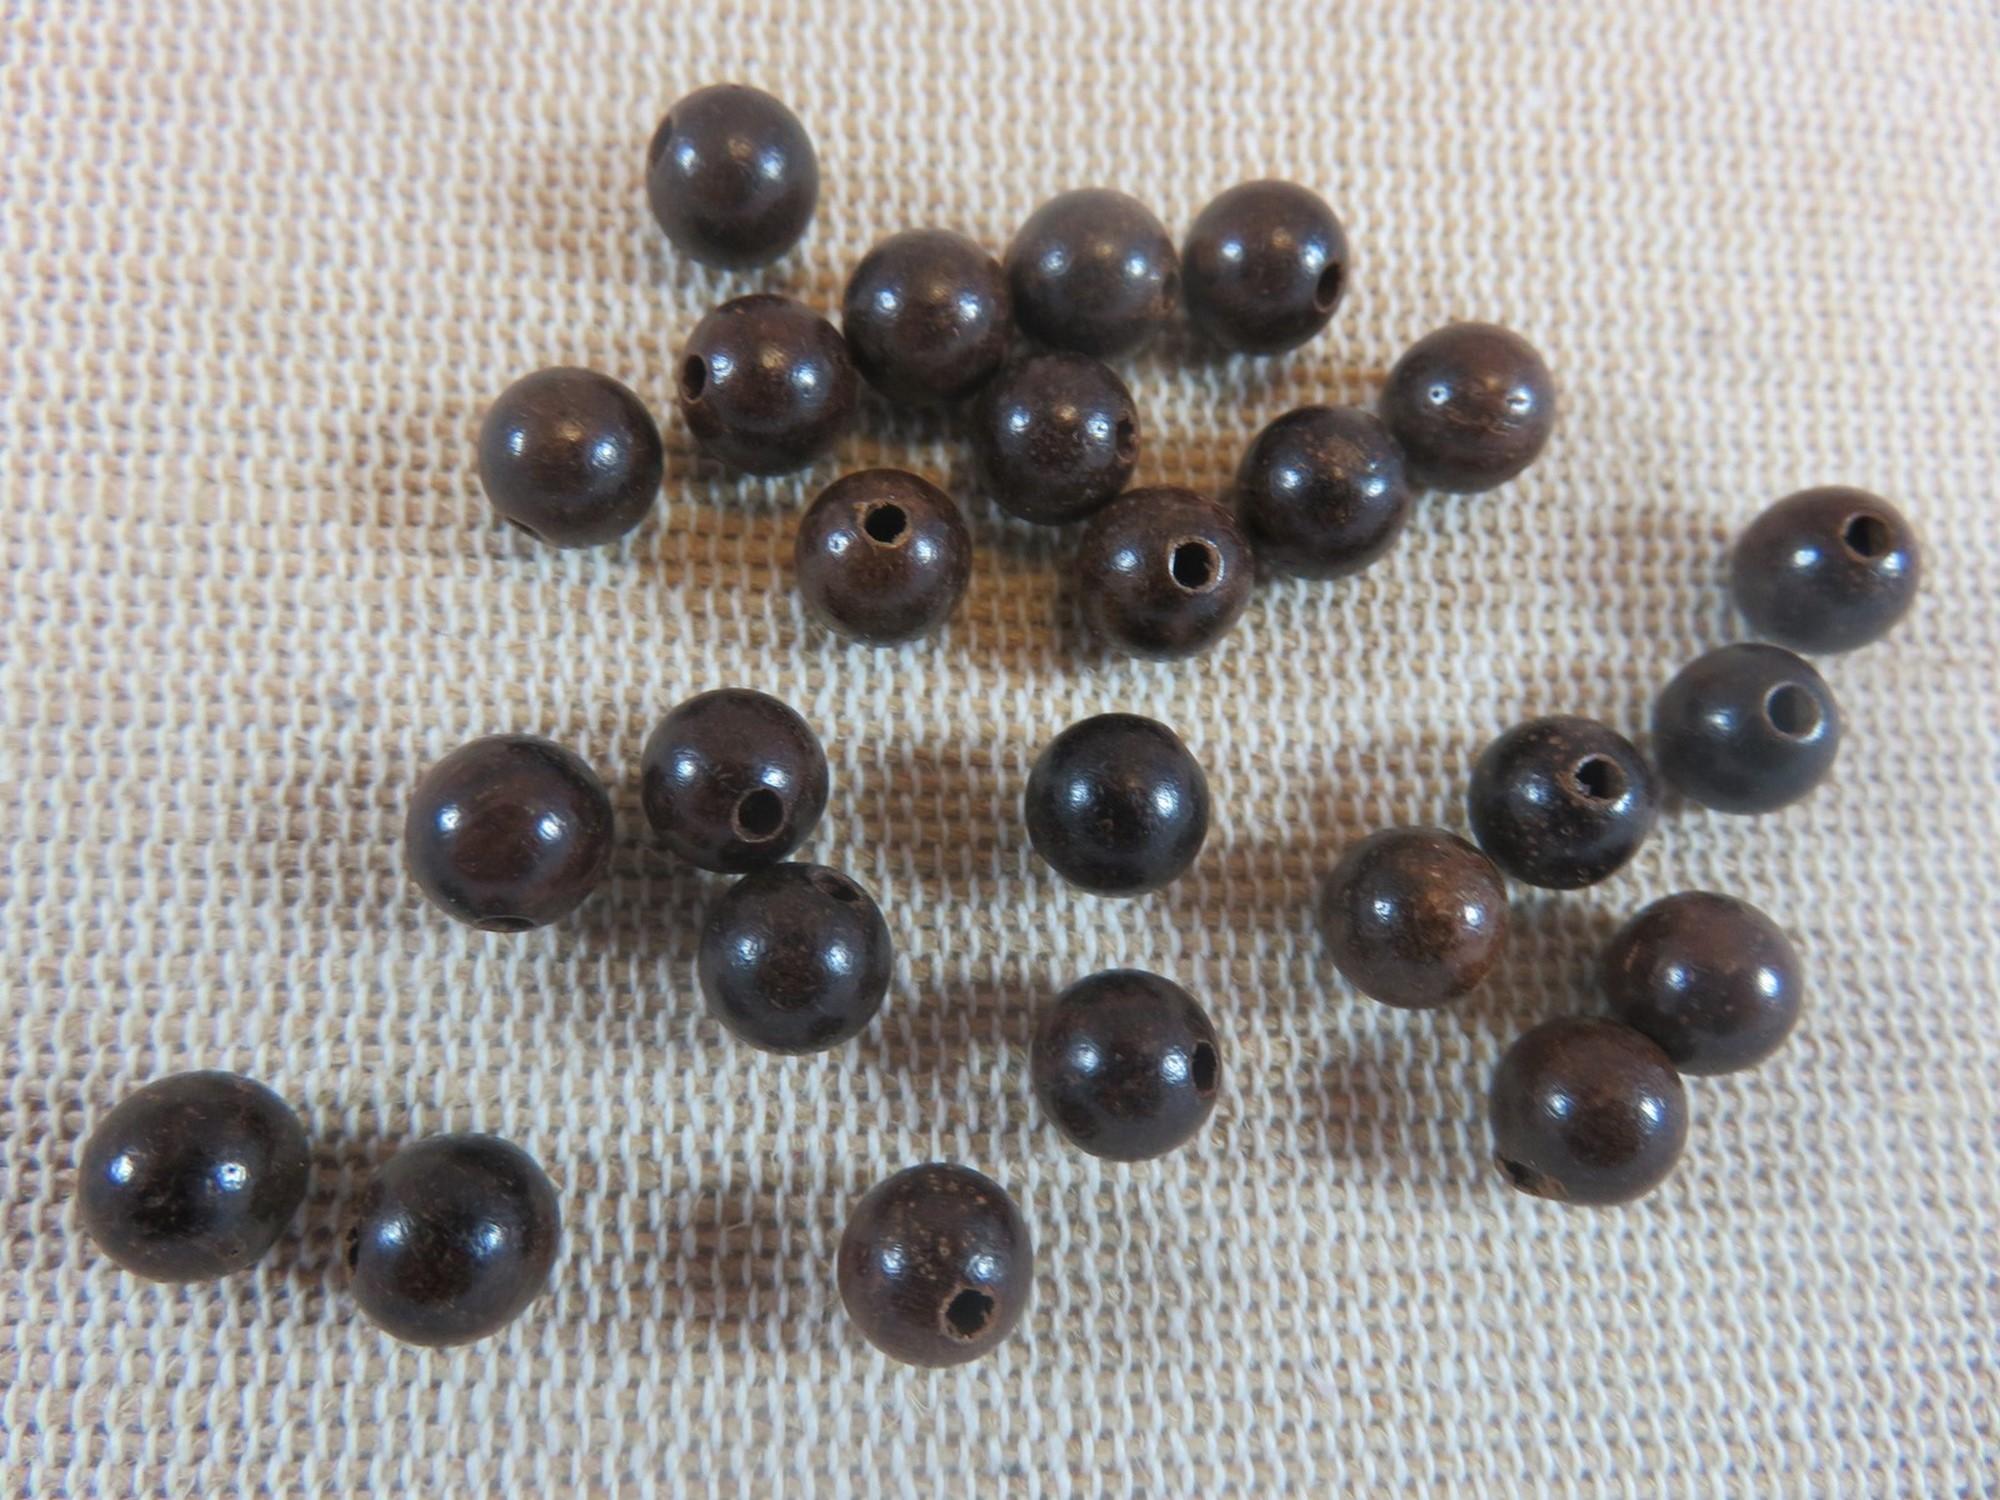 Perles en bois marron foncé, perles ronde 6mm, lot de perles, perles pour bijoux, perles bois marron 6mm, création bijoux DIY